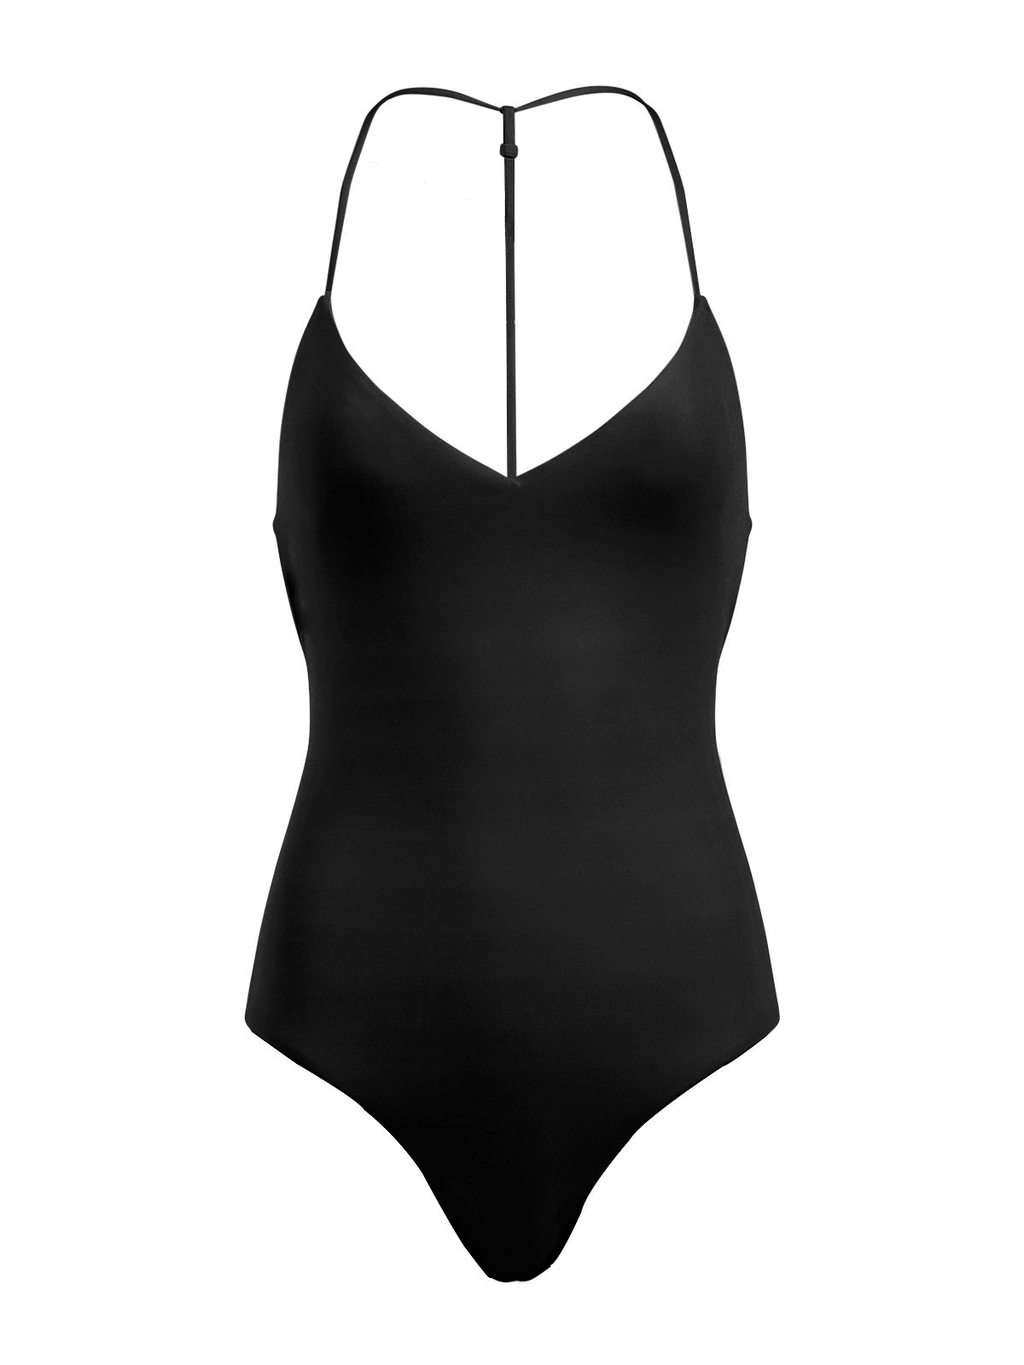 Keva J Swimwear Akila Green Monokini Swimsuit - ShopperBoard